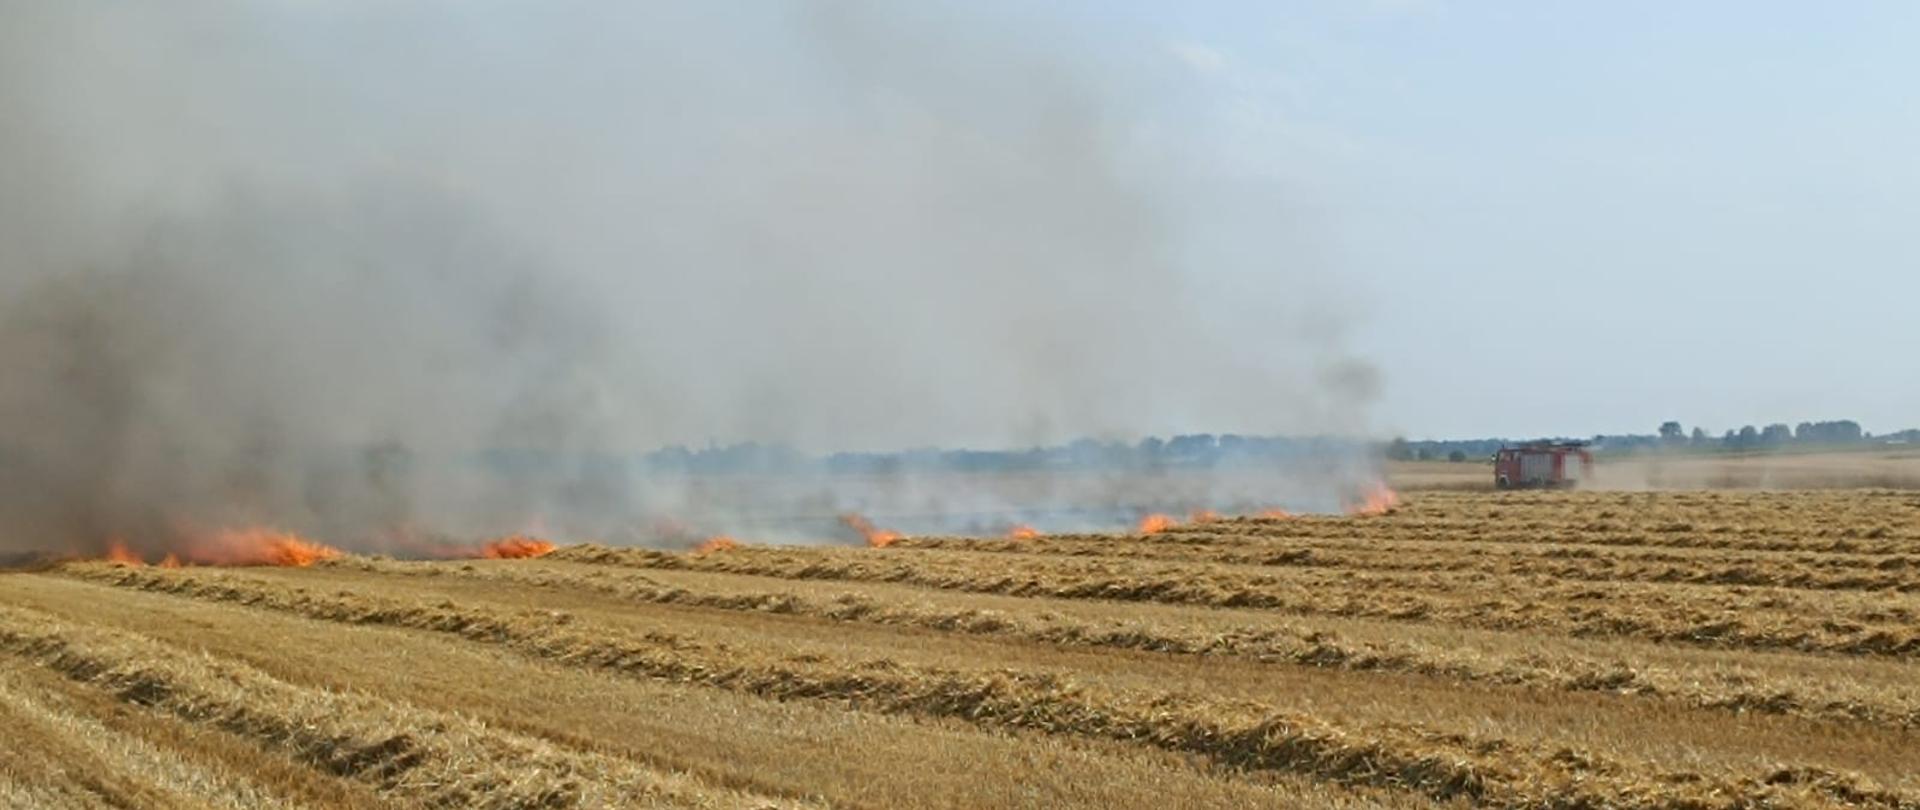 ŻNIWA. Na zdjęciu widać pole na którym doszło do pożaru zboża, wóz strażacki i strażaków gaszących pożar, w tle drzewa